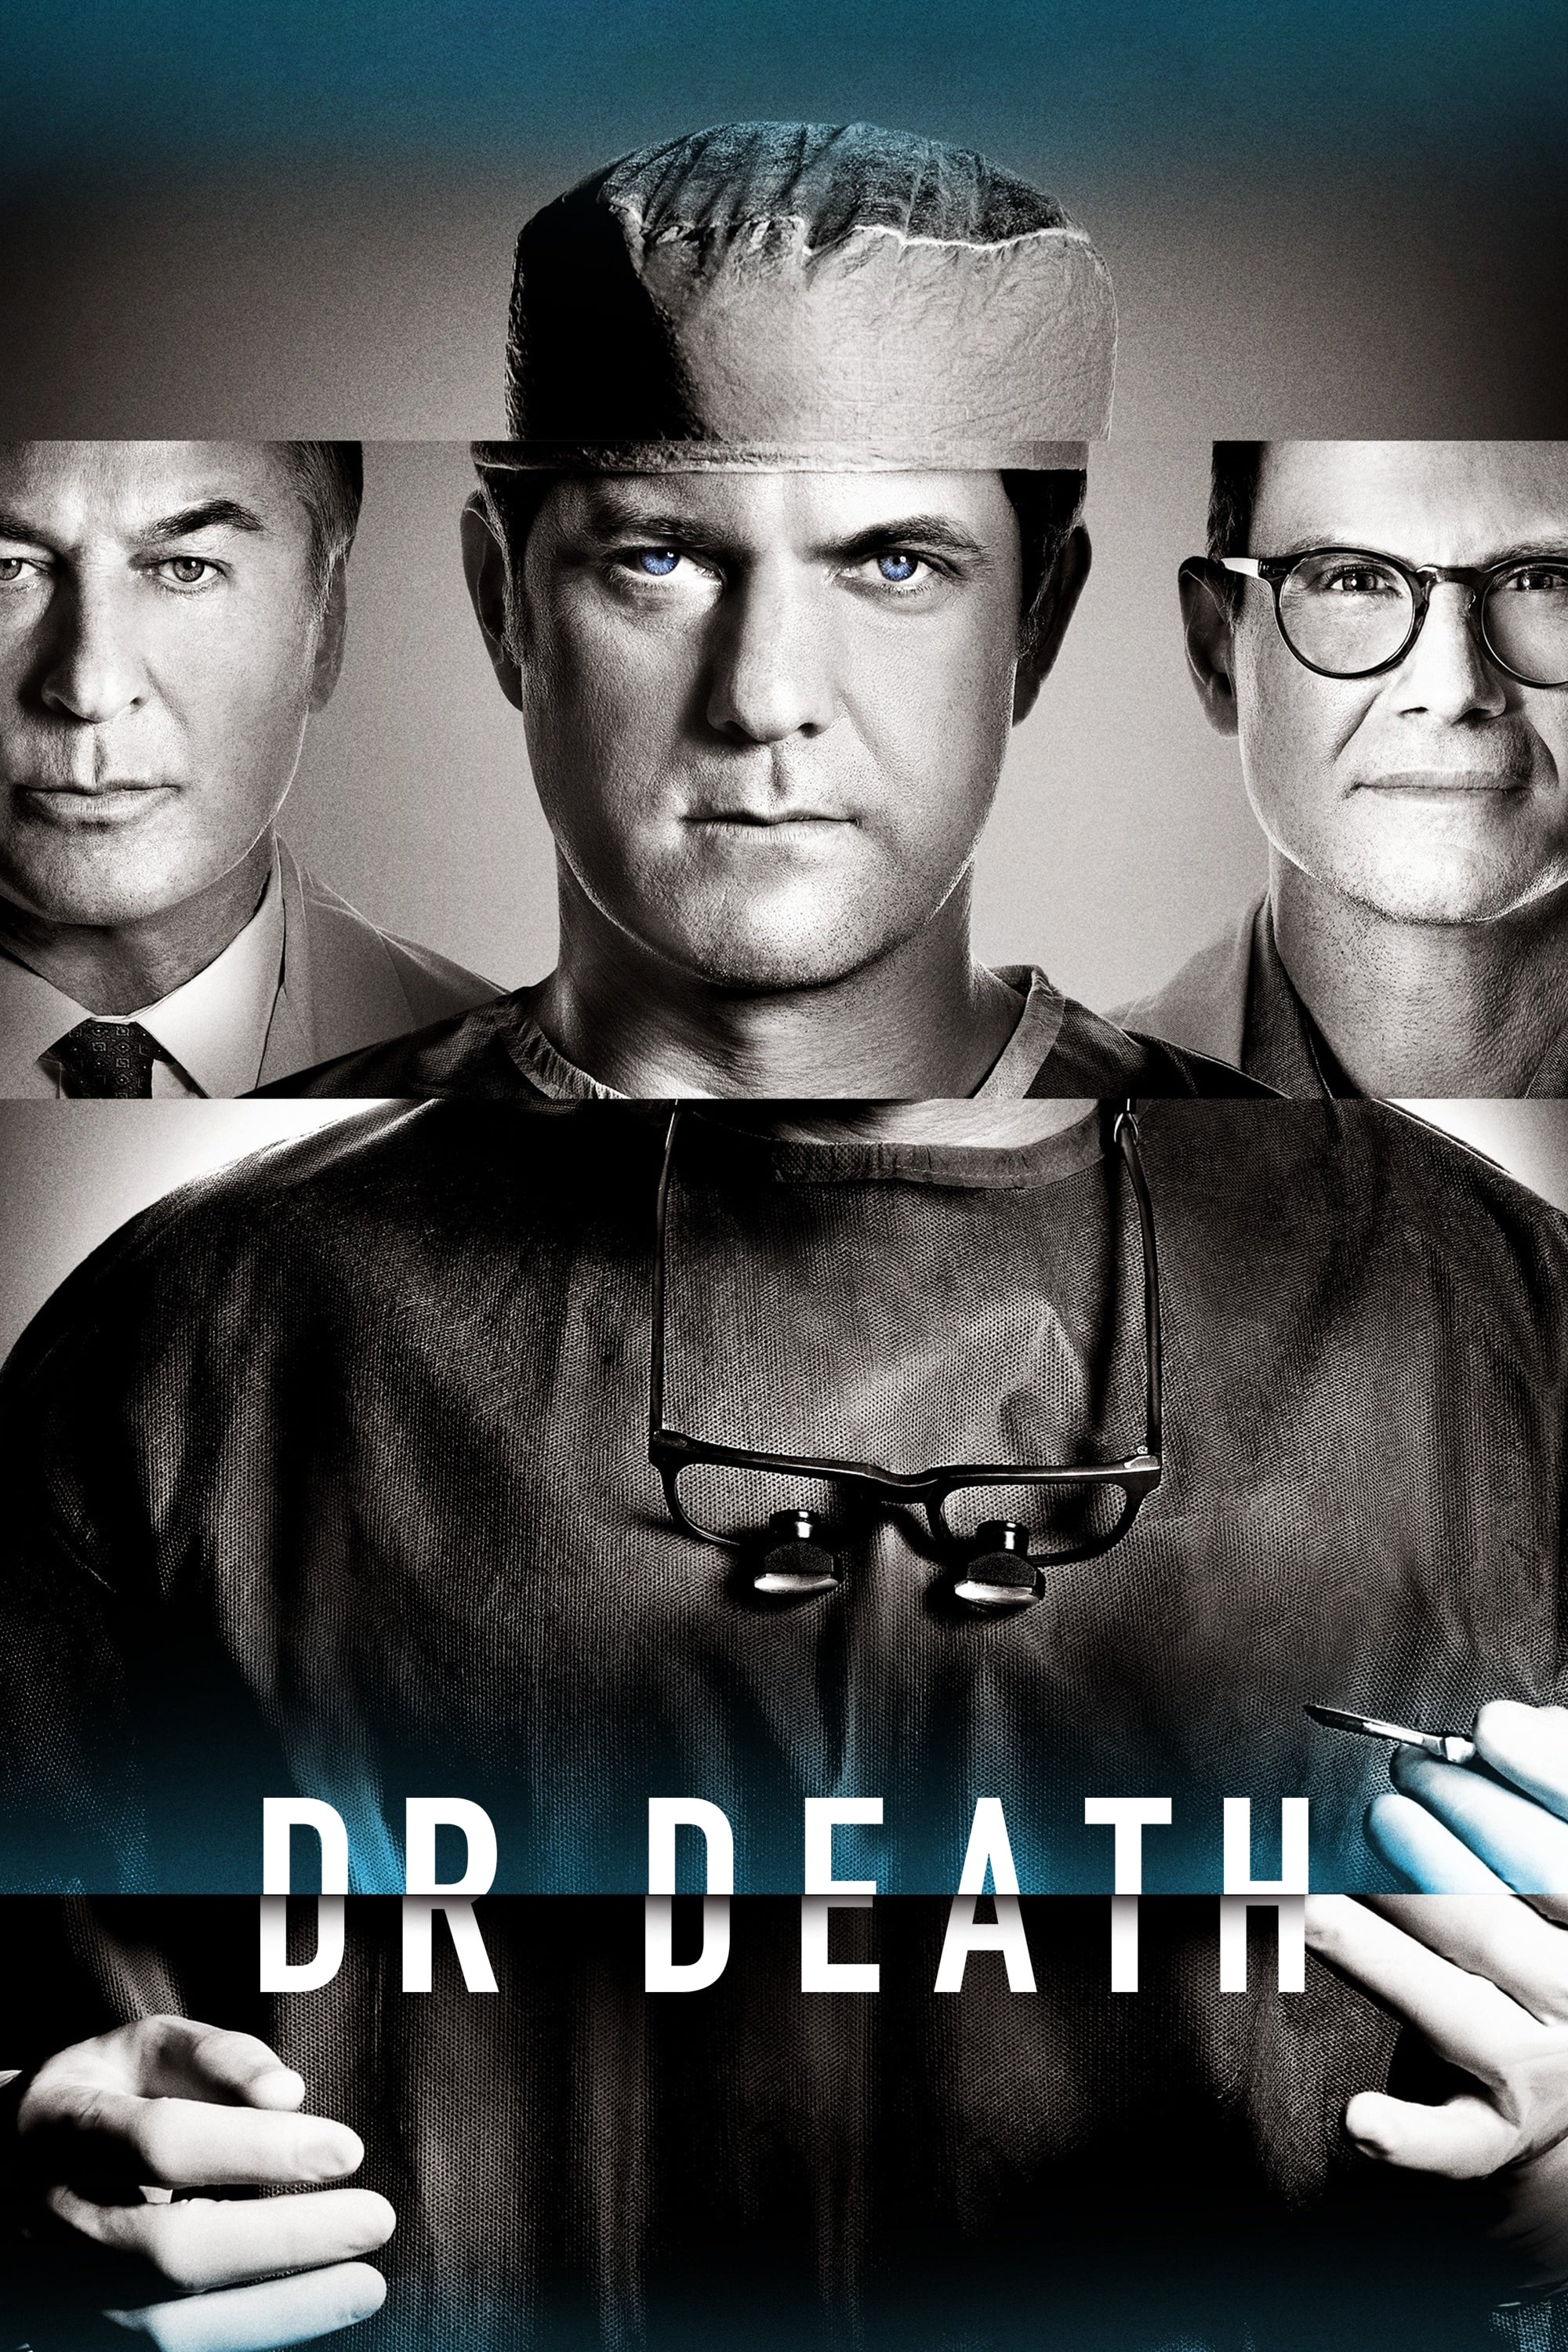 Dr. Death rating